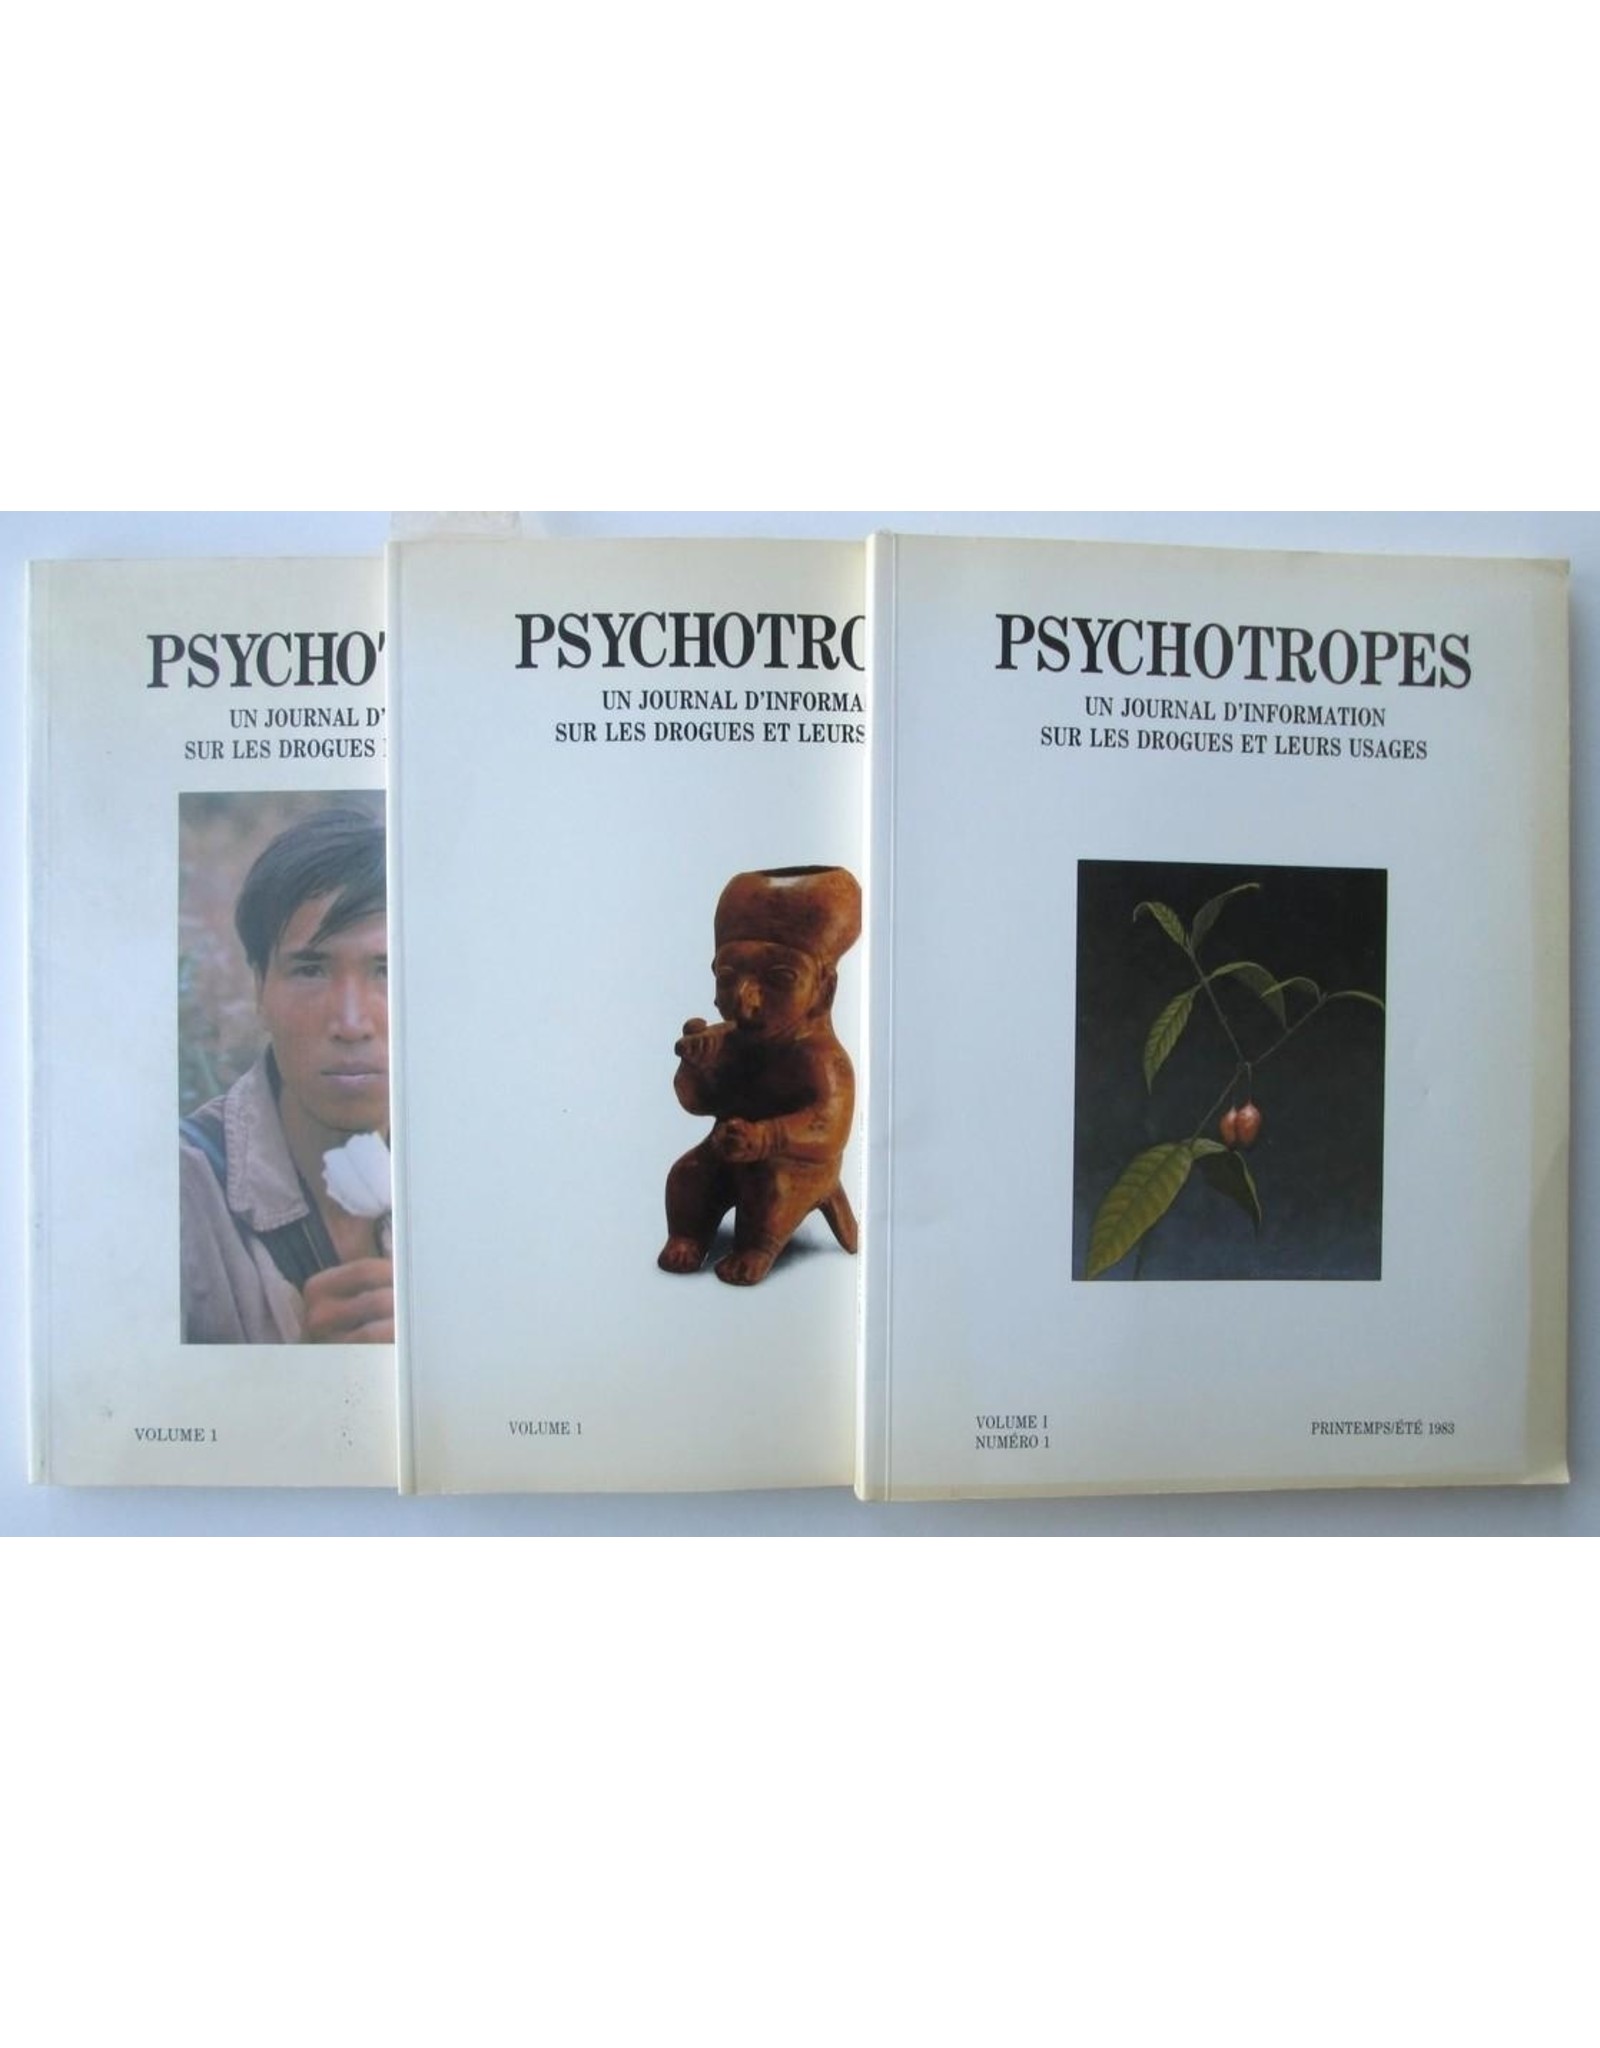 Ronald Verbeke - Psychotropes [Complete eerste jaargang] Numéro 1 t/m 3.